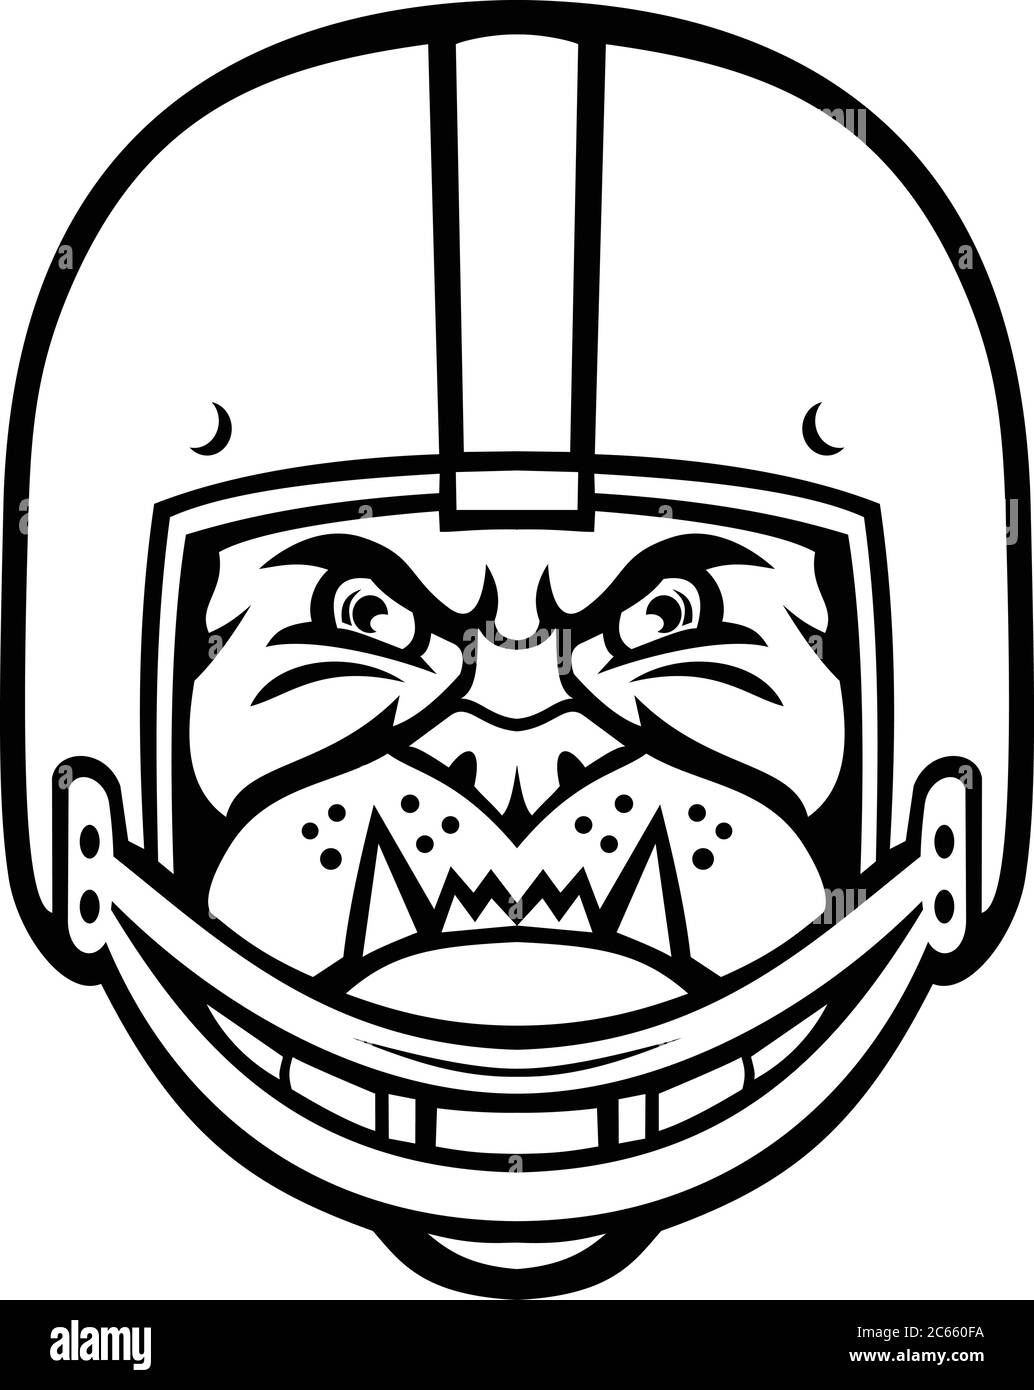 Mascotte de sport illustration de la tête d'un bouledogue portant un casque de football américain ou gridiron vu de l'avant sur un arrière-plan isolé en noir et Illustration de Vecteur